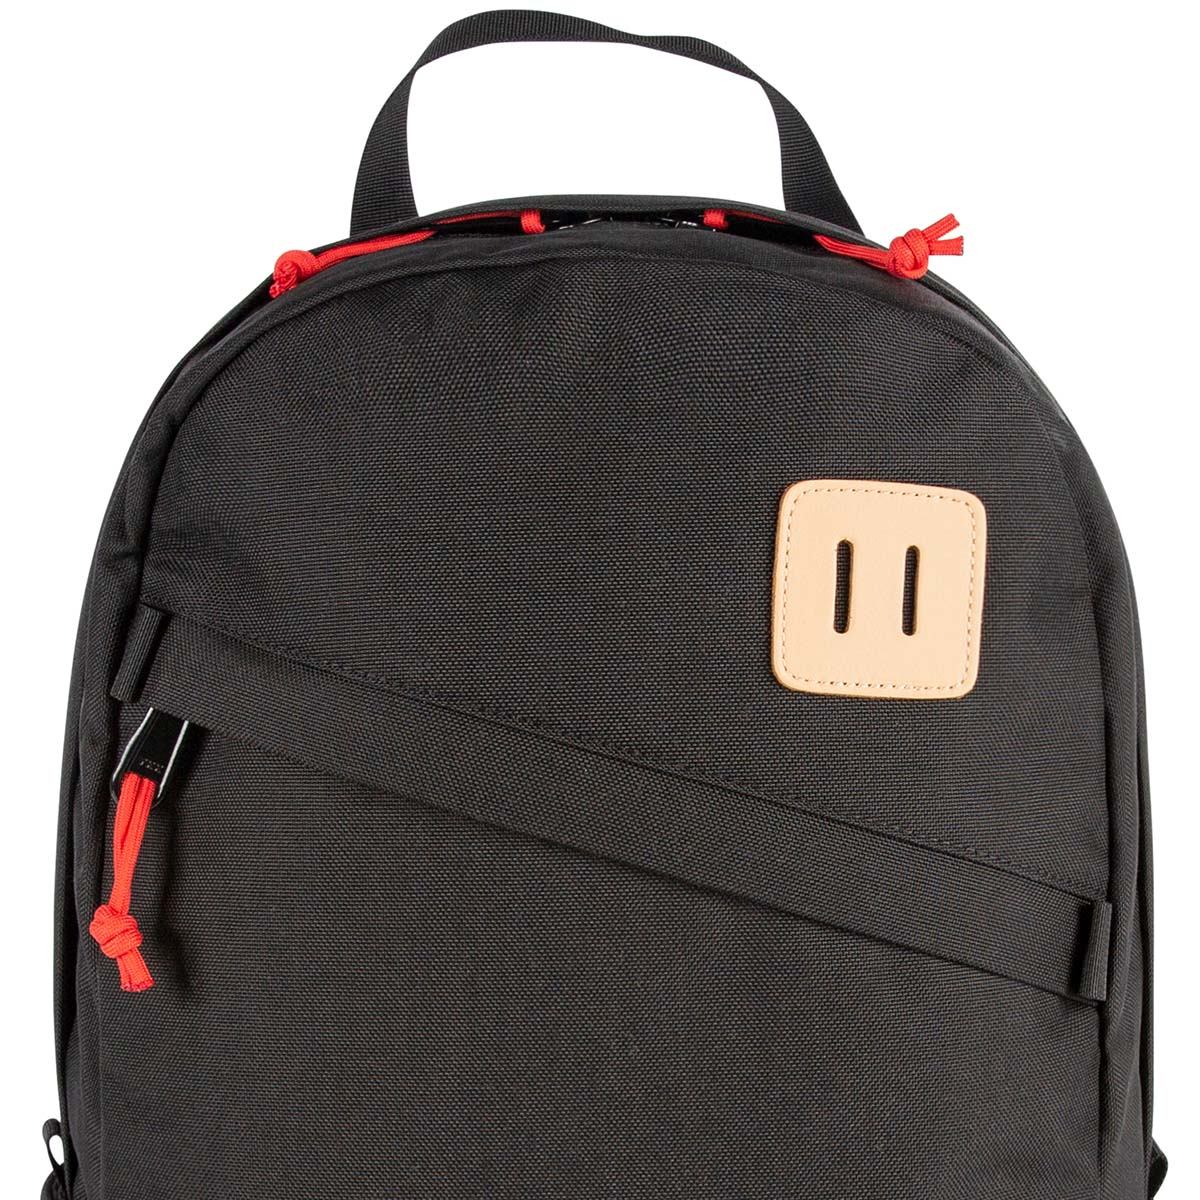 Topo Designs Daypack Classic Black, zeer sterke rugzak met klassieke uitstraling, uitermate geschikt voor dagelijks gebruik